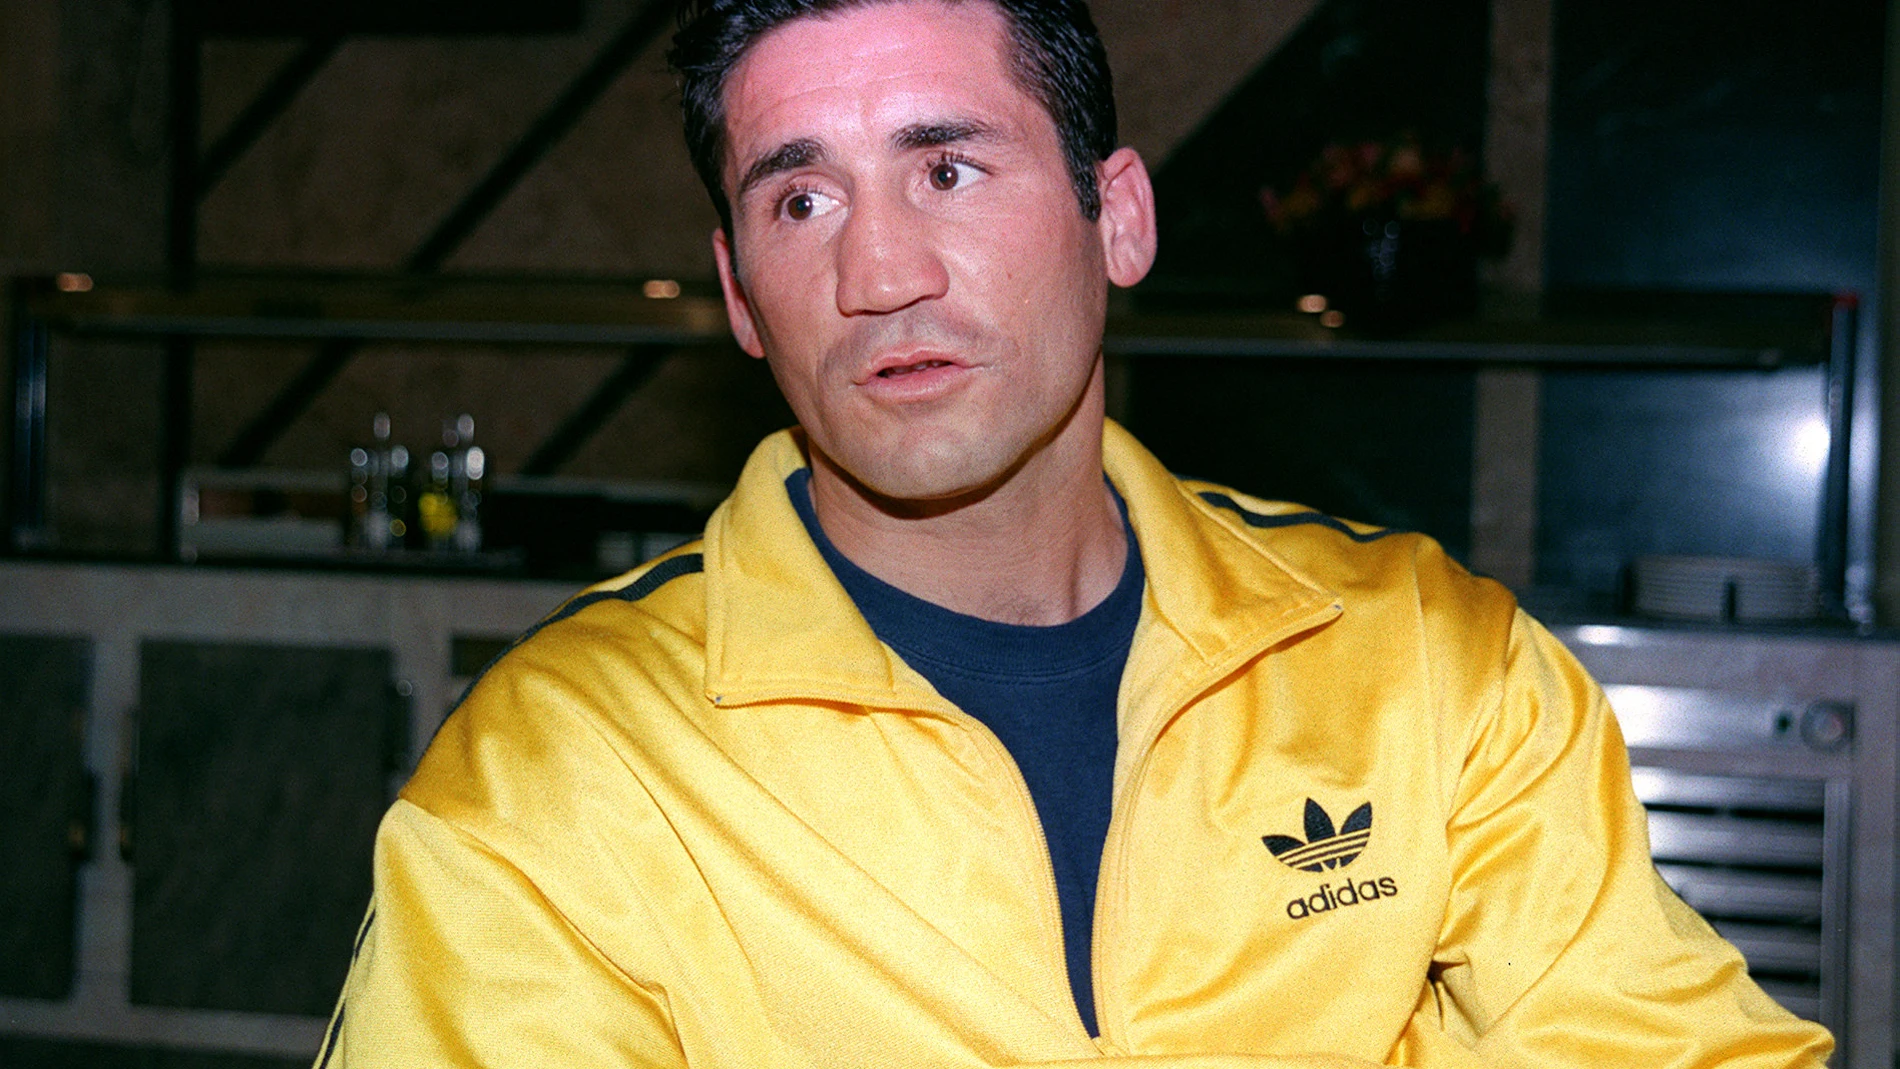 Fotografía de archivo fechada el 3 de mayo de 1999 que muestra al púgil Poli Díaz mientras anuncia su vuelta al boxeo durante una rueda de prensa celebrada en Madrid.